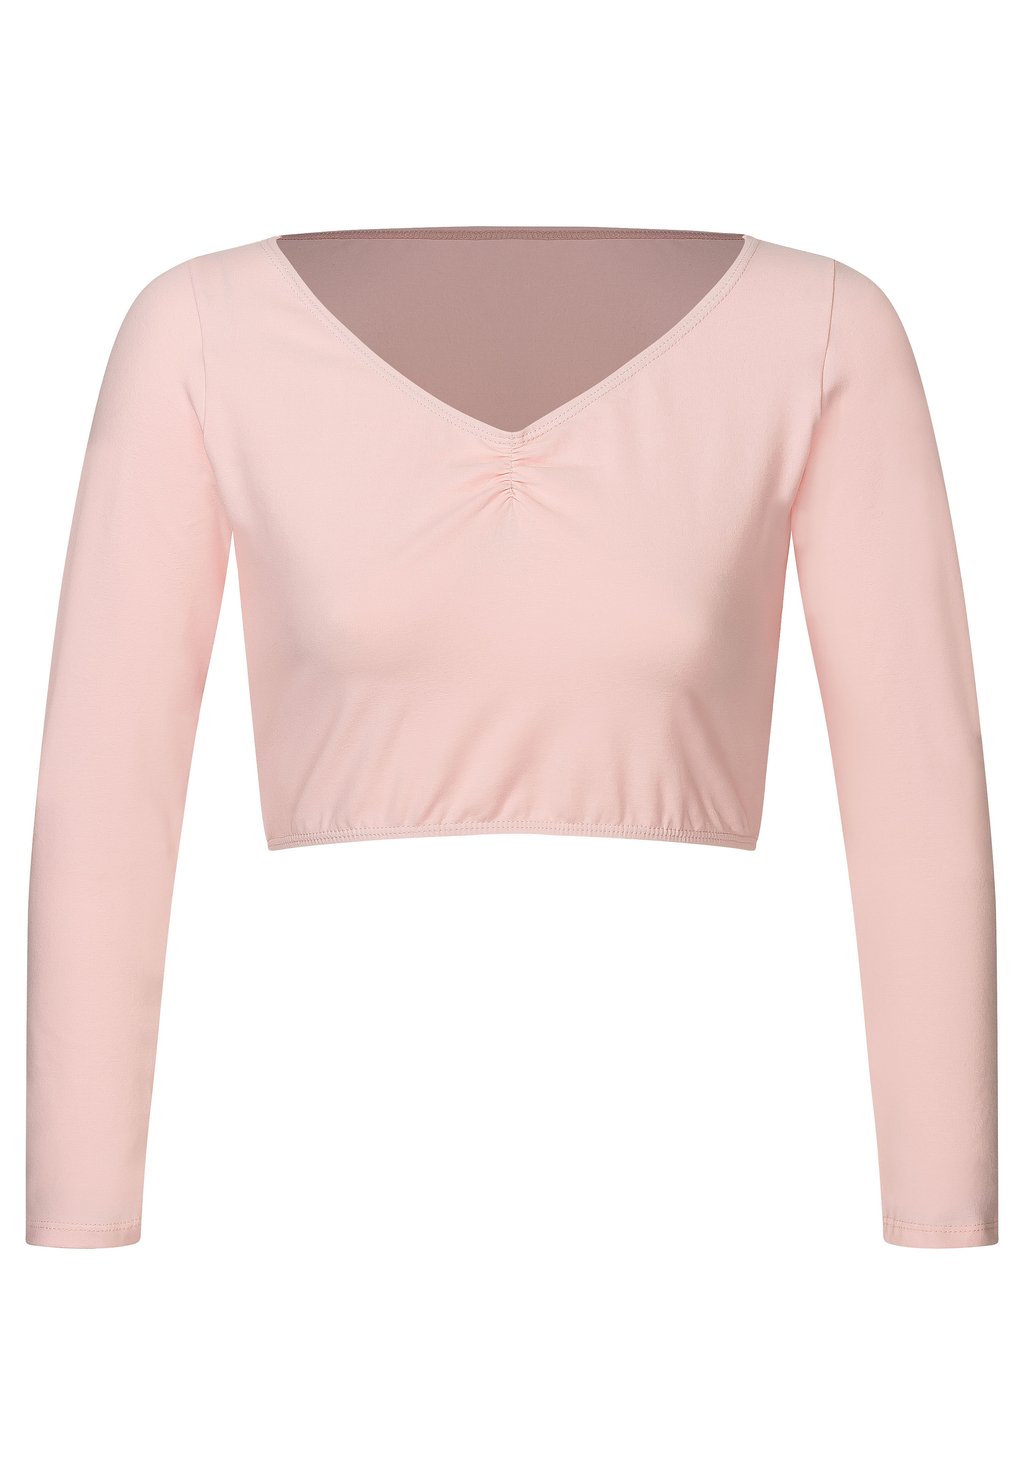 Рубашка с длинным рукавом BALLETT GERAFFT MIRELLE Tanzmuster, цвет ballett rosa